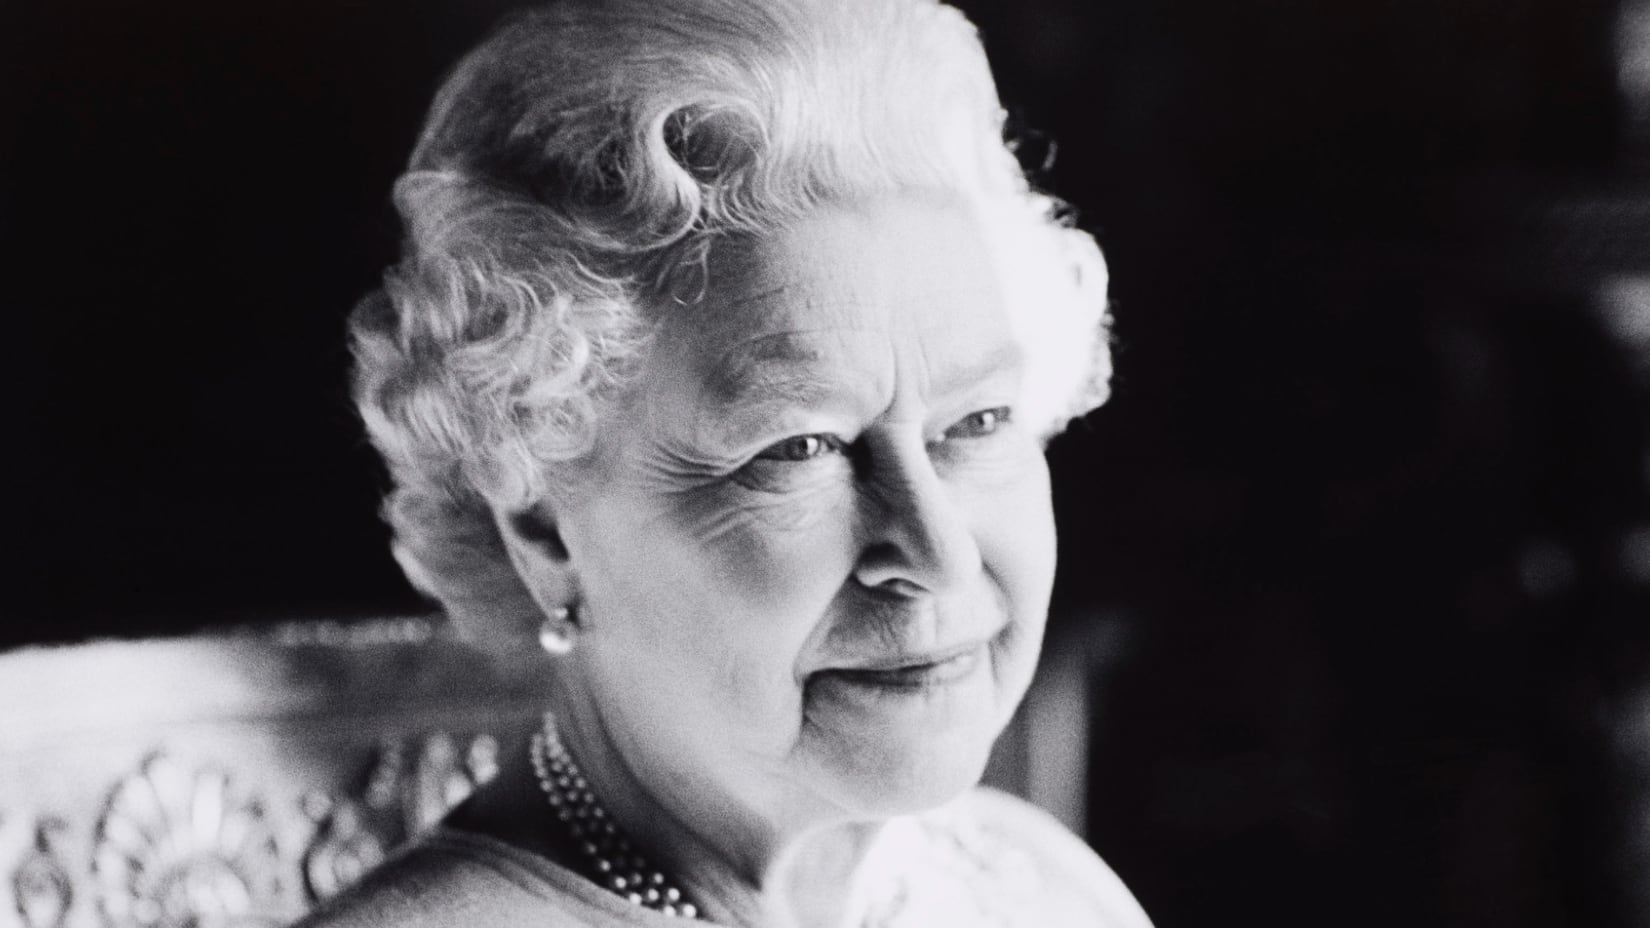 Em fevereiro deste ano, por ocasião de seu aniversário, a Rainha emitiu um comunicado deixando claro o seu desejo de que Charles se tornasse rei do Reino Unido após a sua morte.